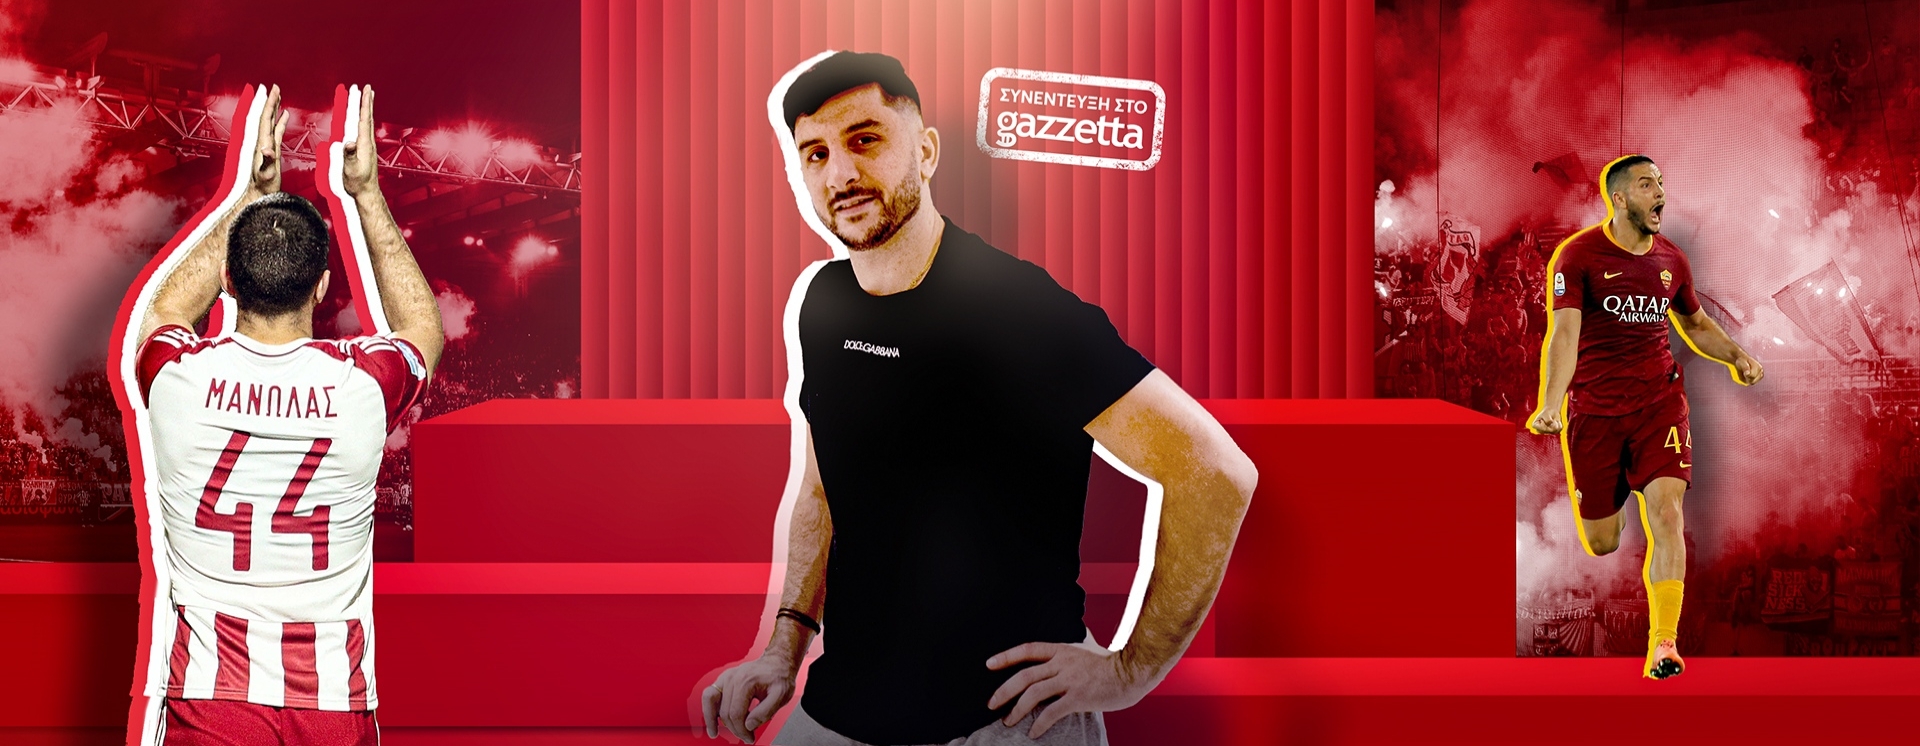 Ο Κώστας Μανωλάς στο Gazzetta: «Όσο περισσότερο με βρίζουν, τόσο καλύτερα παίζω»